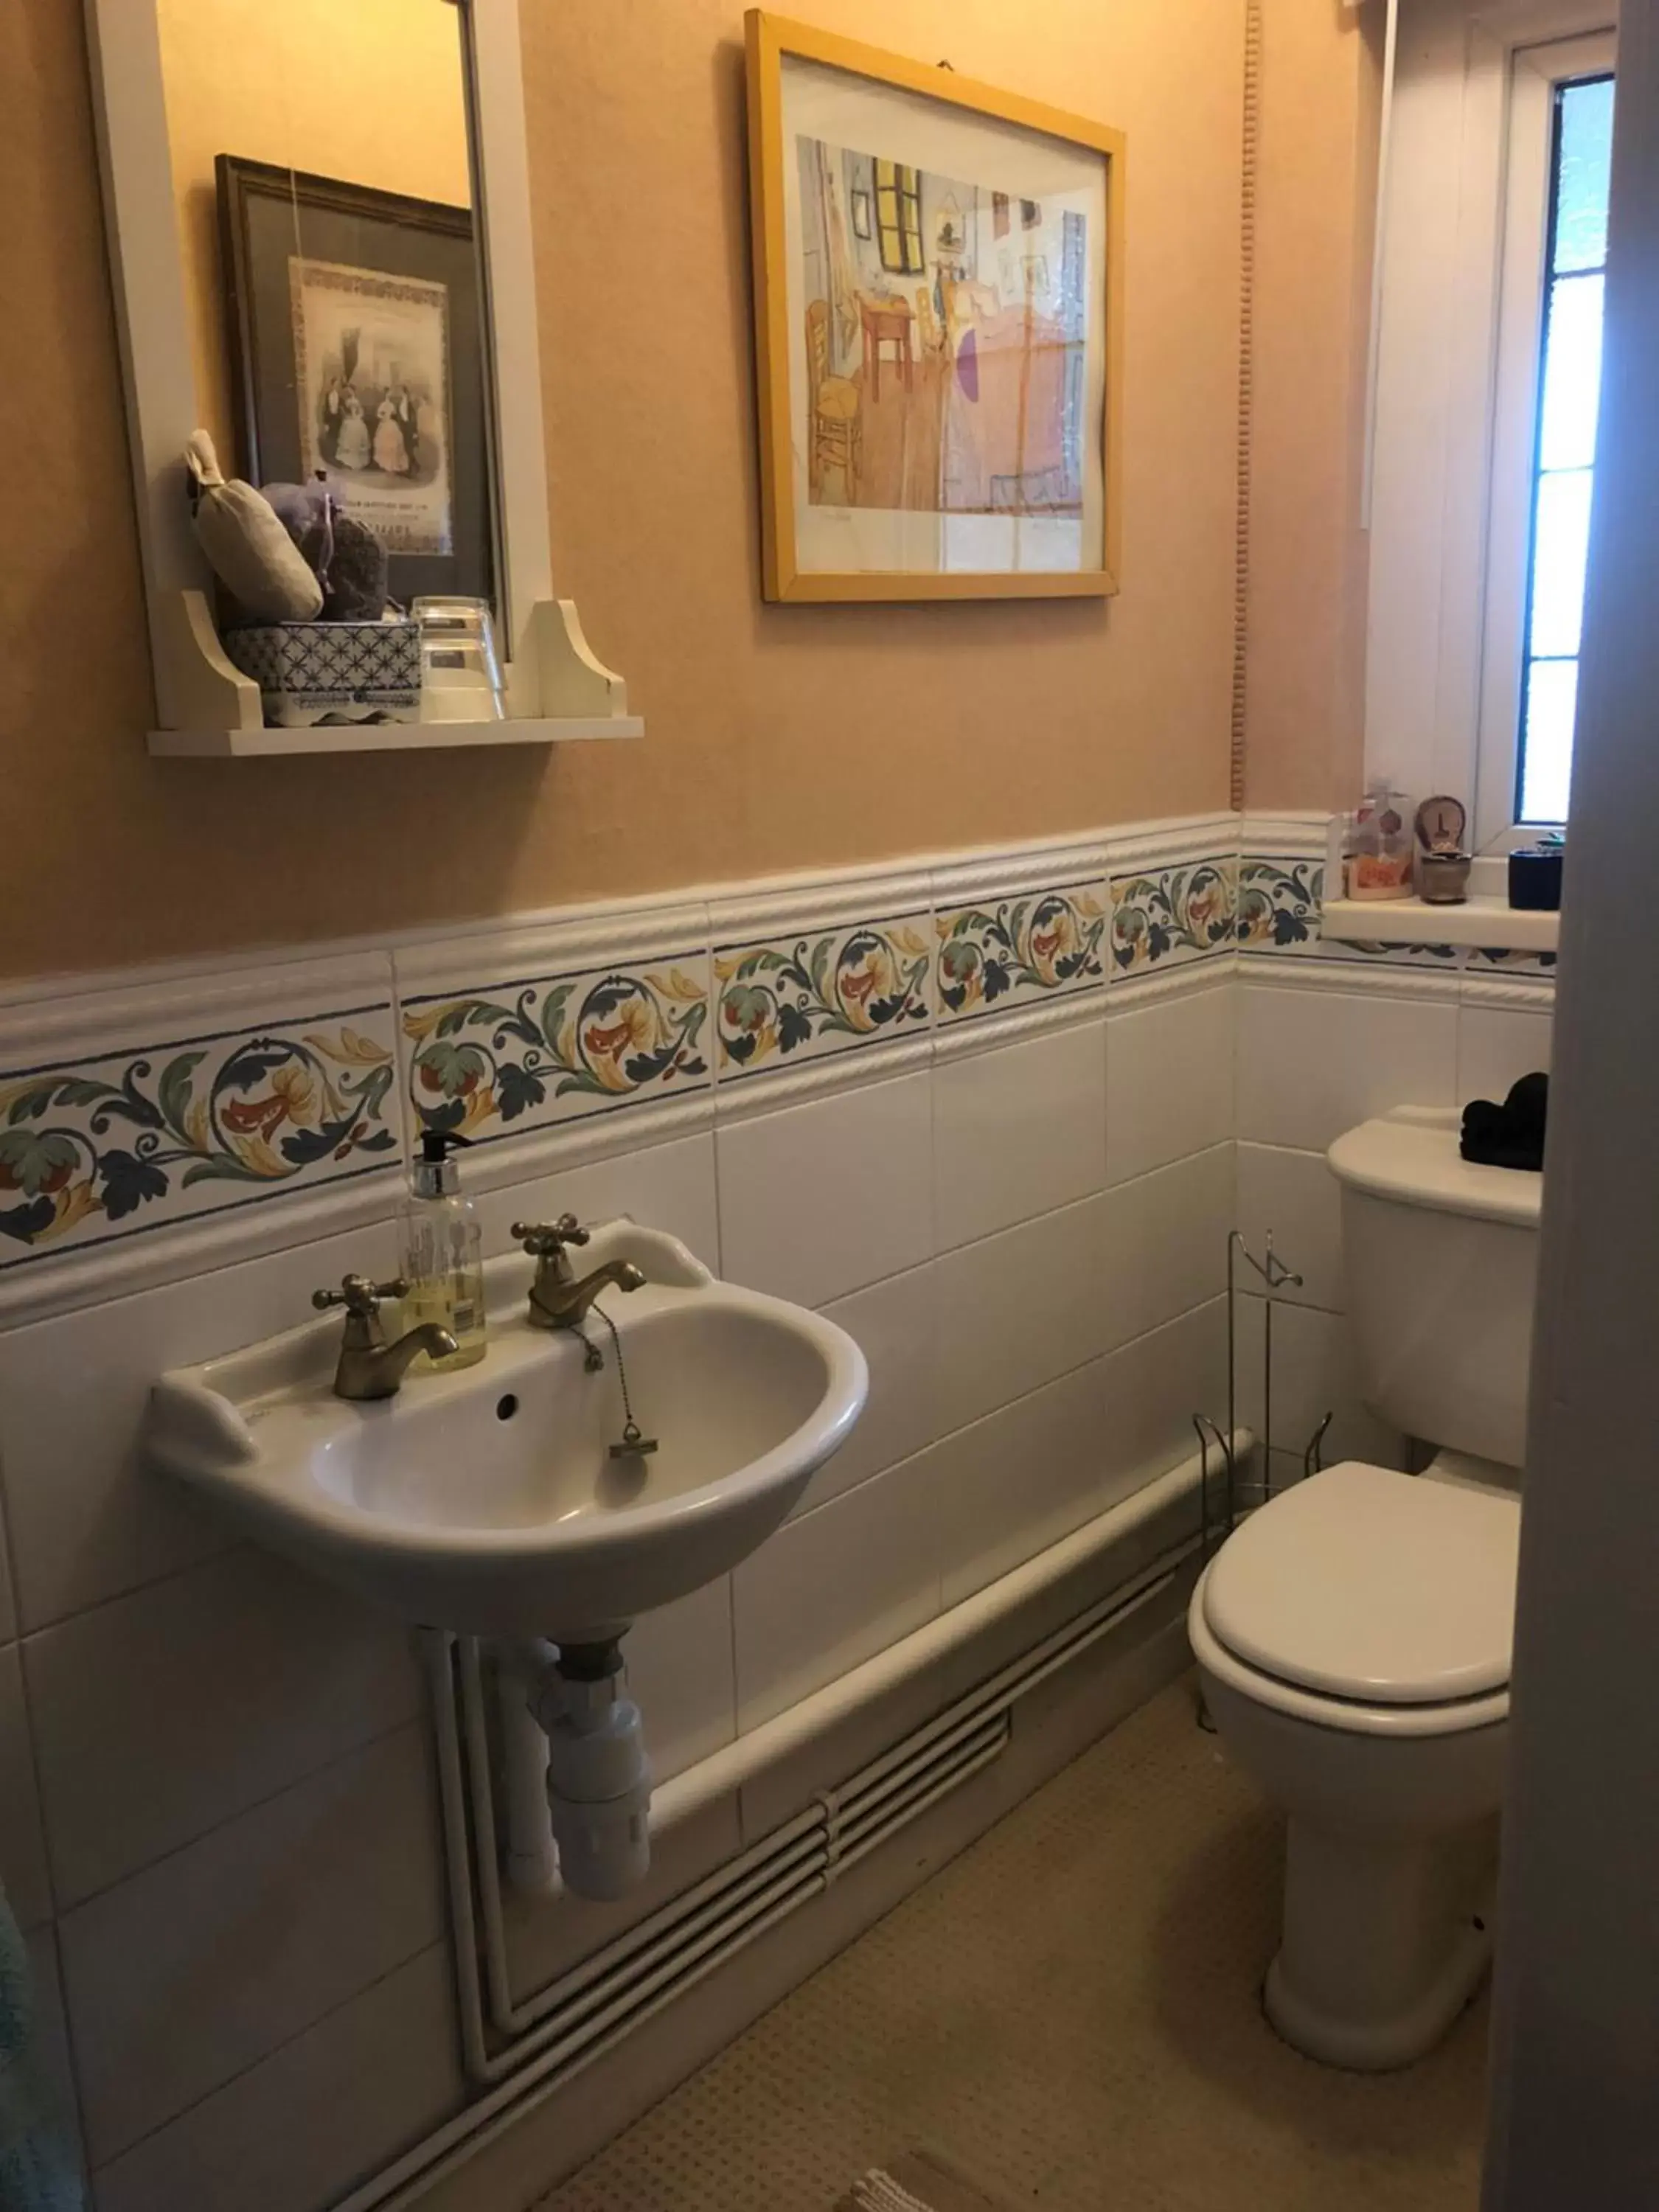 Toilet, Bathroom in Wynberg House Bed & Breakfast